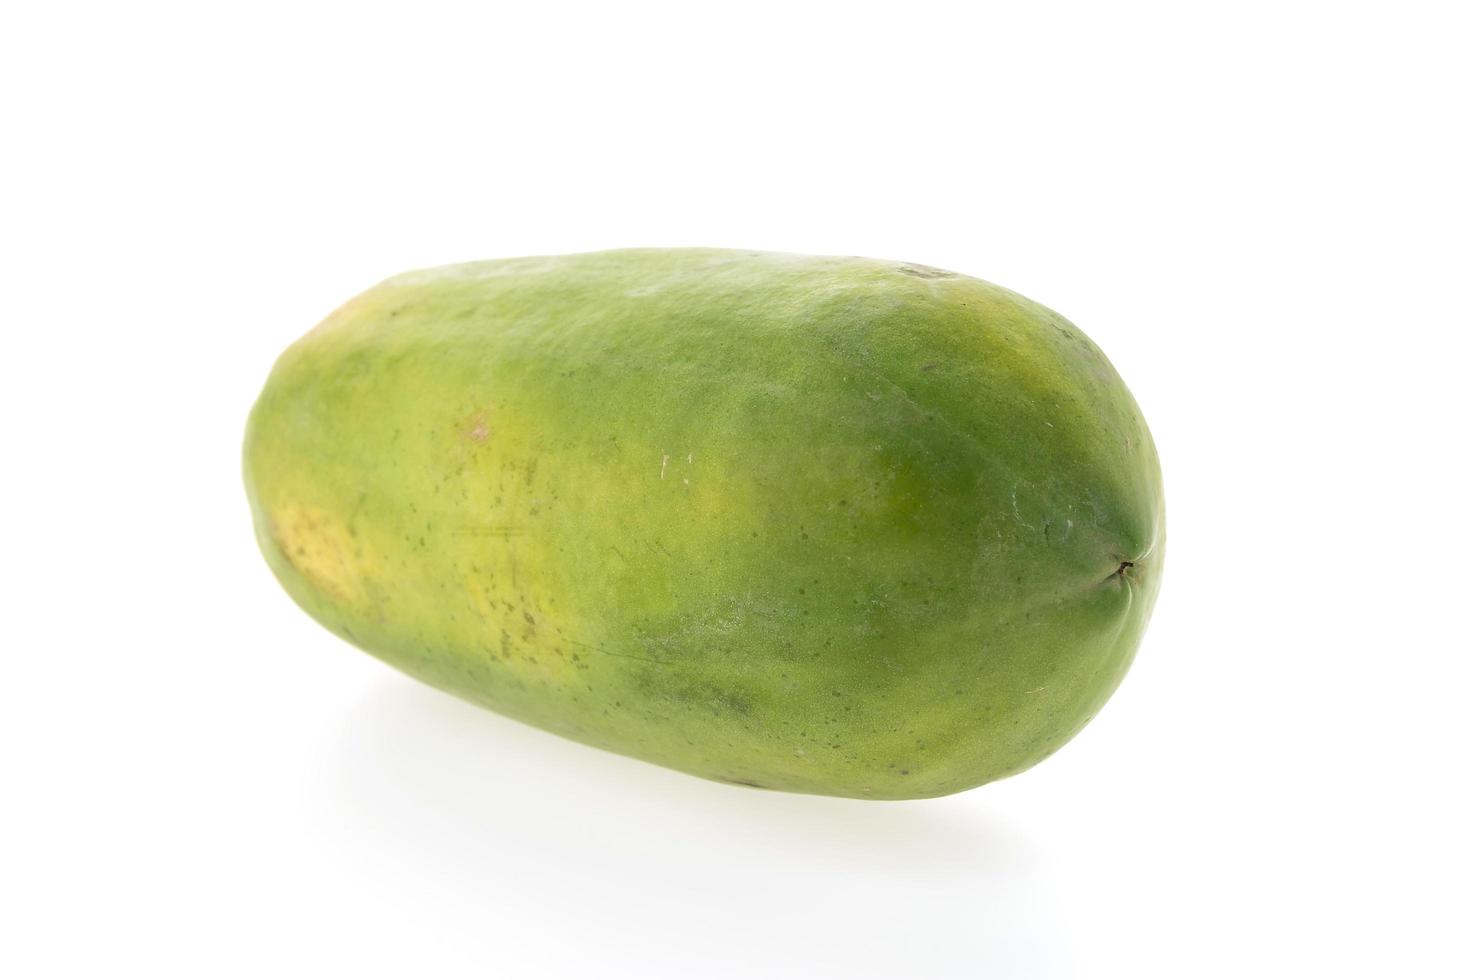 frutto di papaia isolato foto